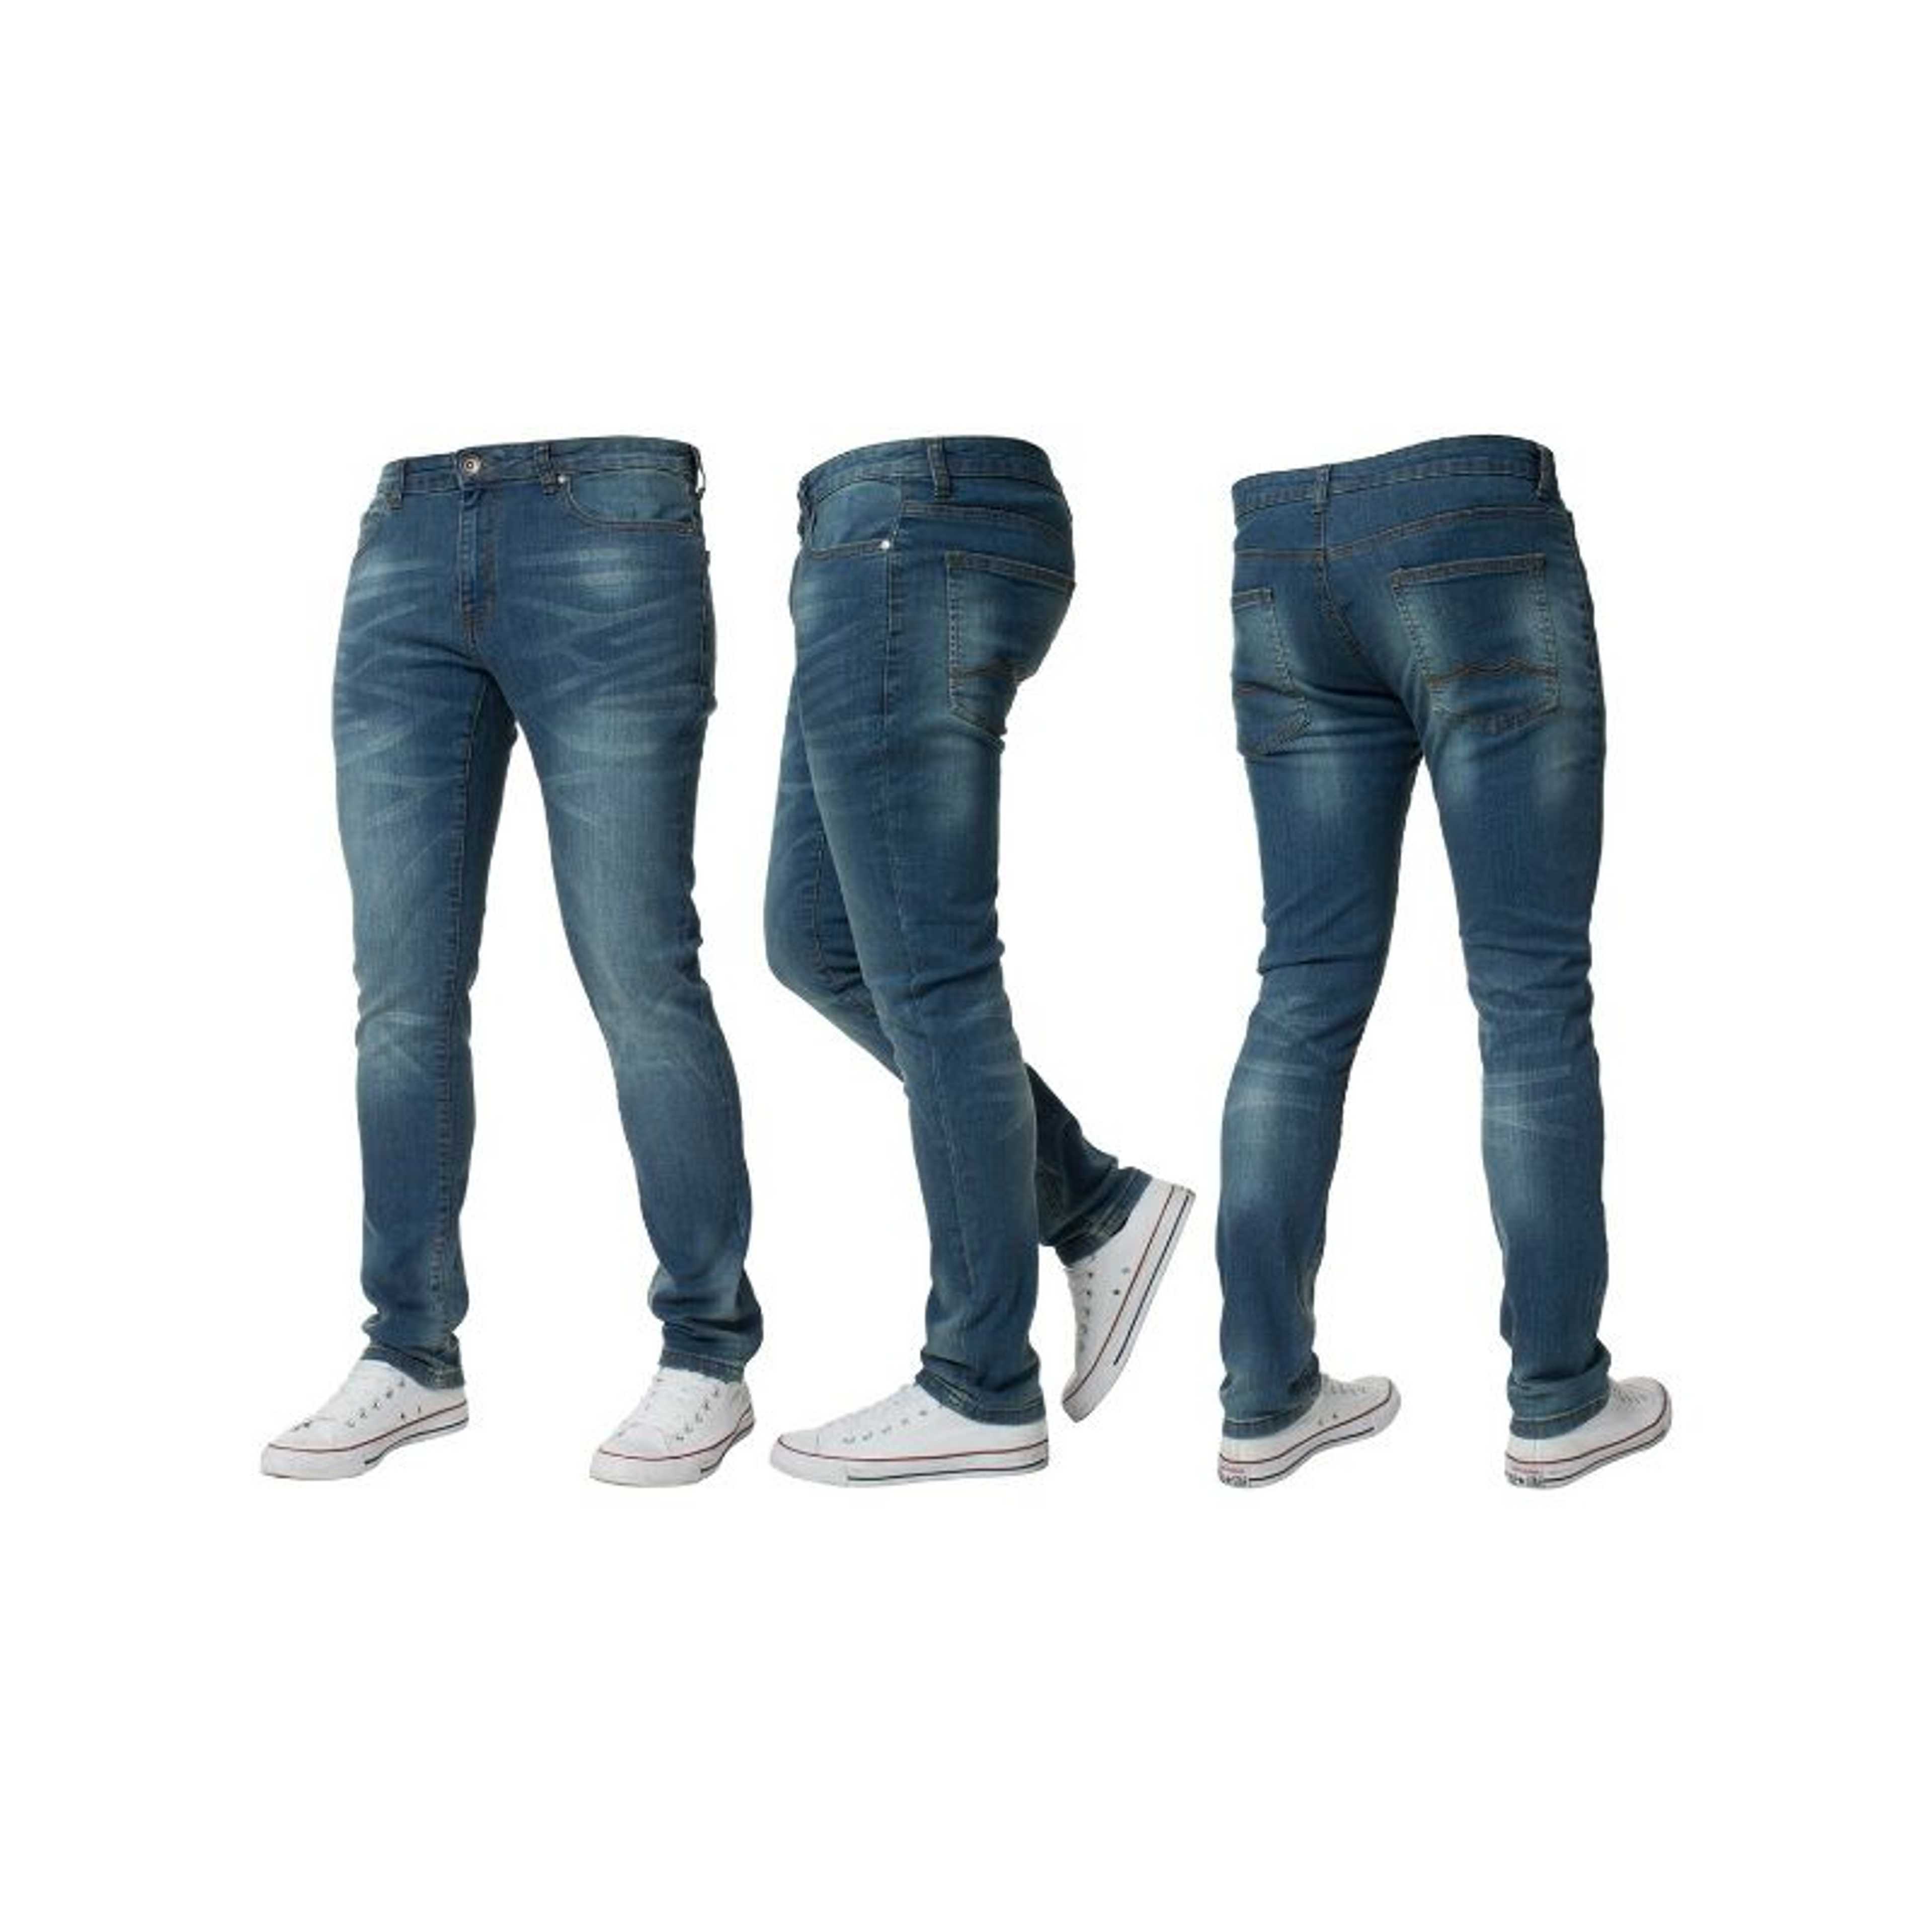 Rubahas Men’s Slim Fit Denim Jeans Pant in Hunter Green Color